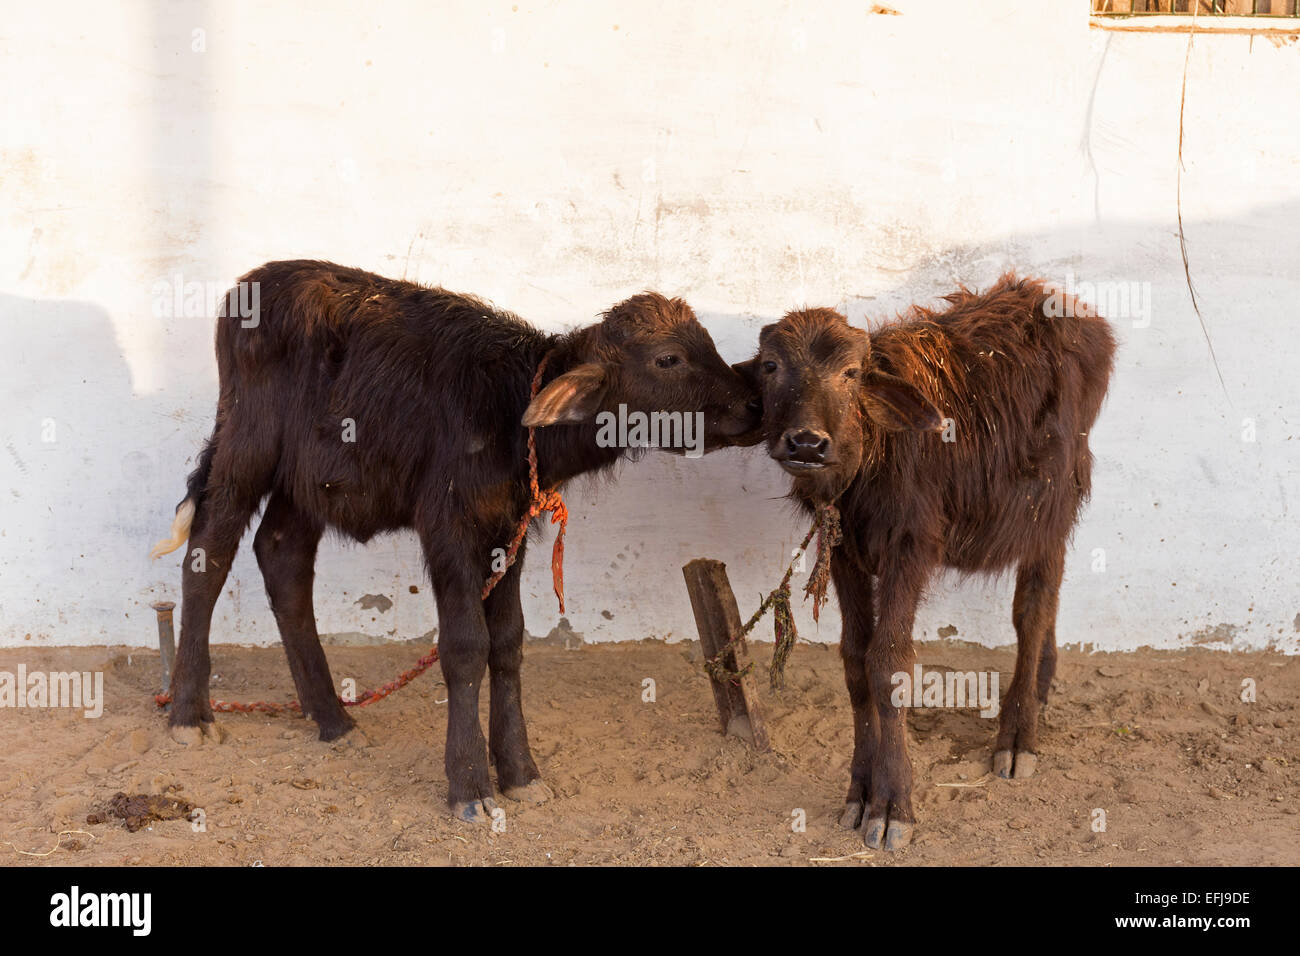 India, Uttar Pradesh, Agra, two young calves Stock Photo